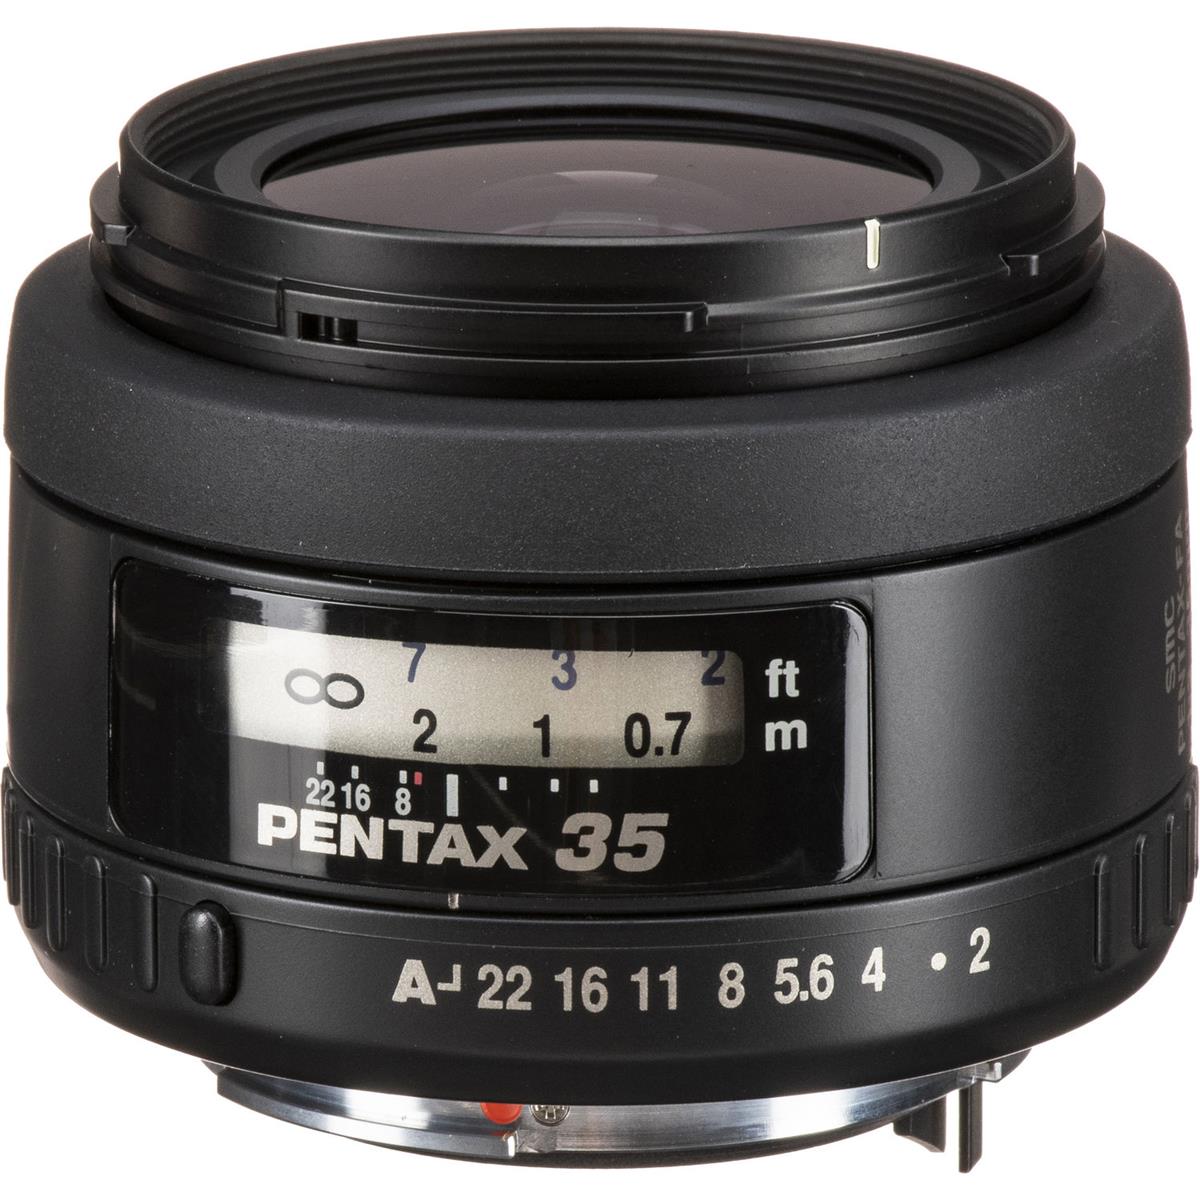 Image of Pentax SMCP-FA 35mm f/2.0 AL Wide Angle Lens